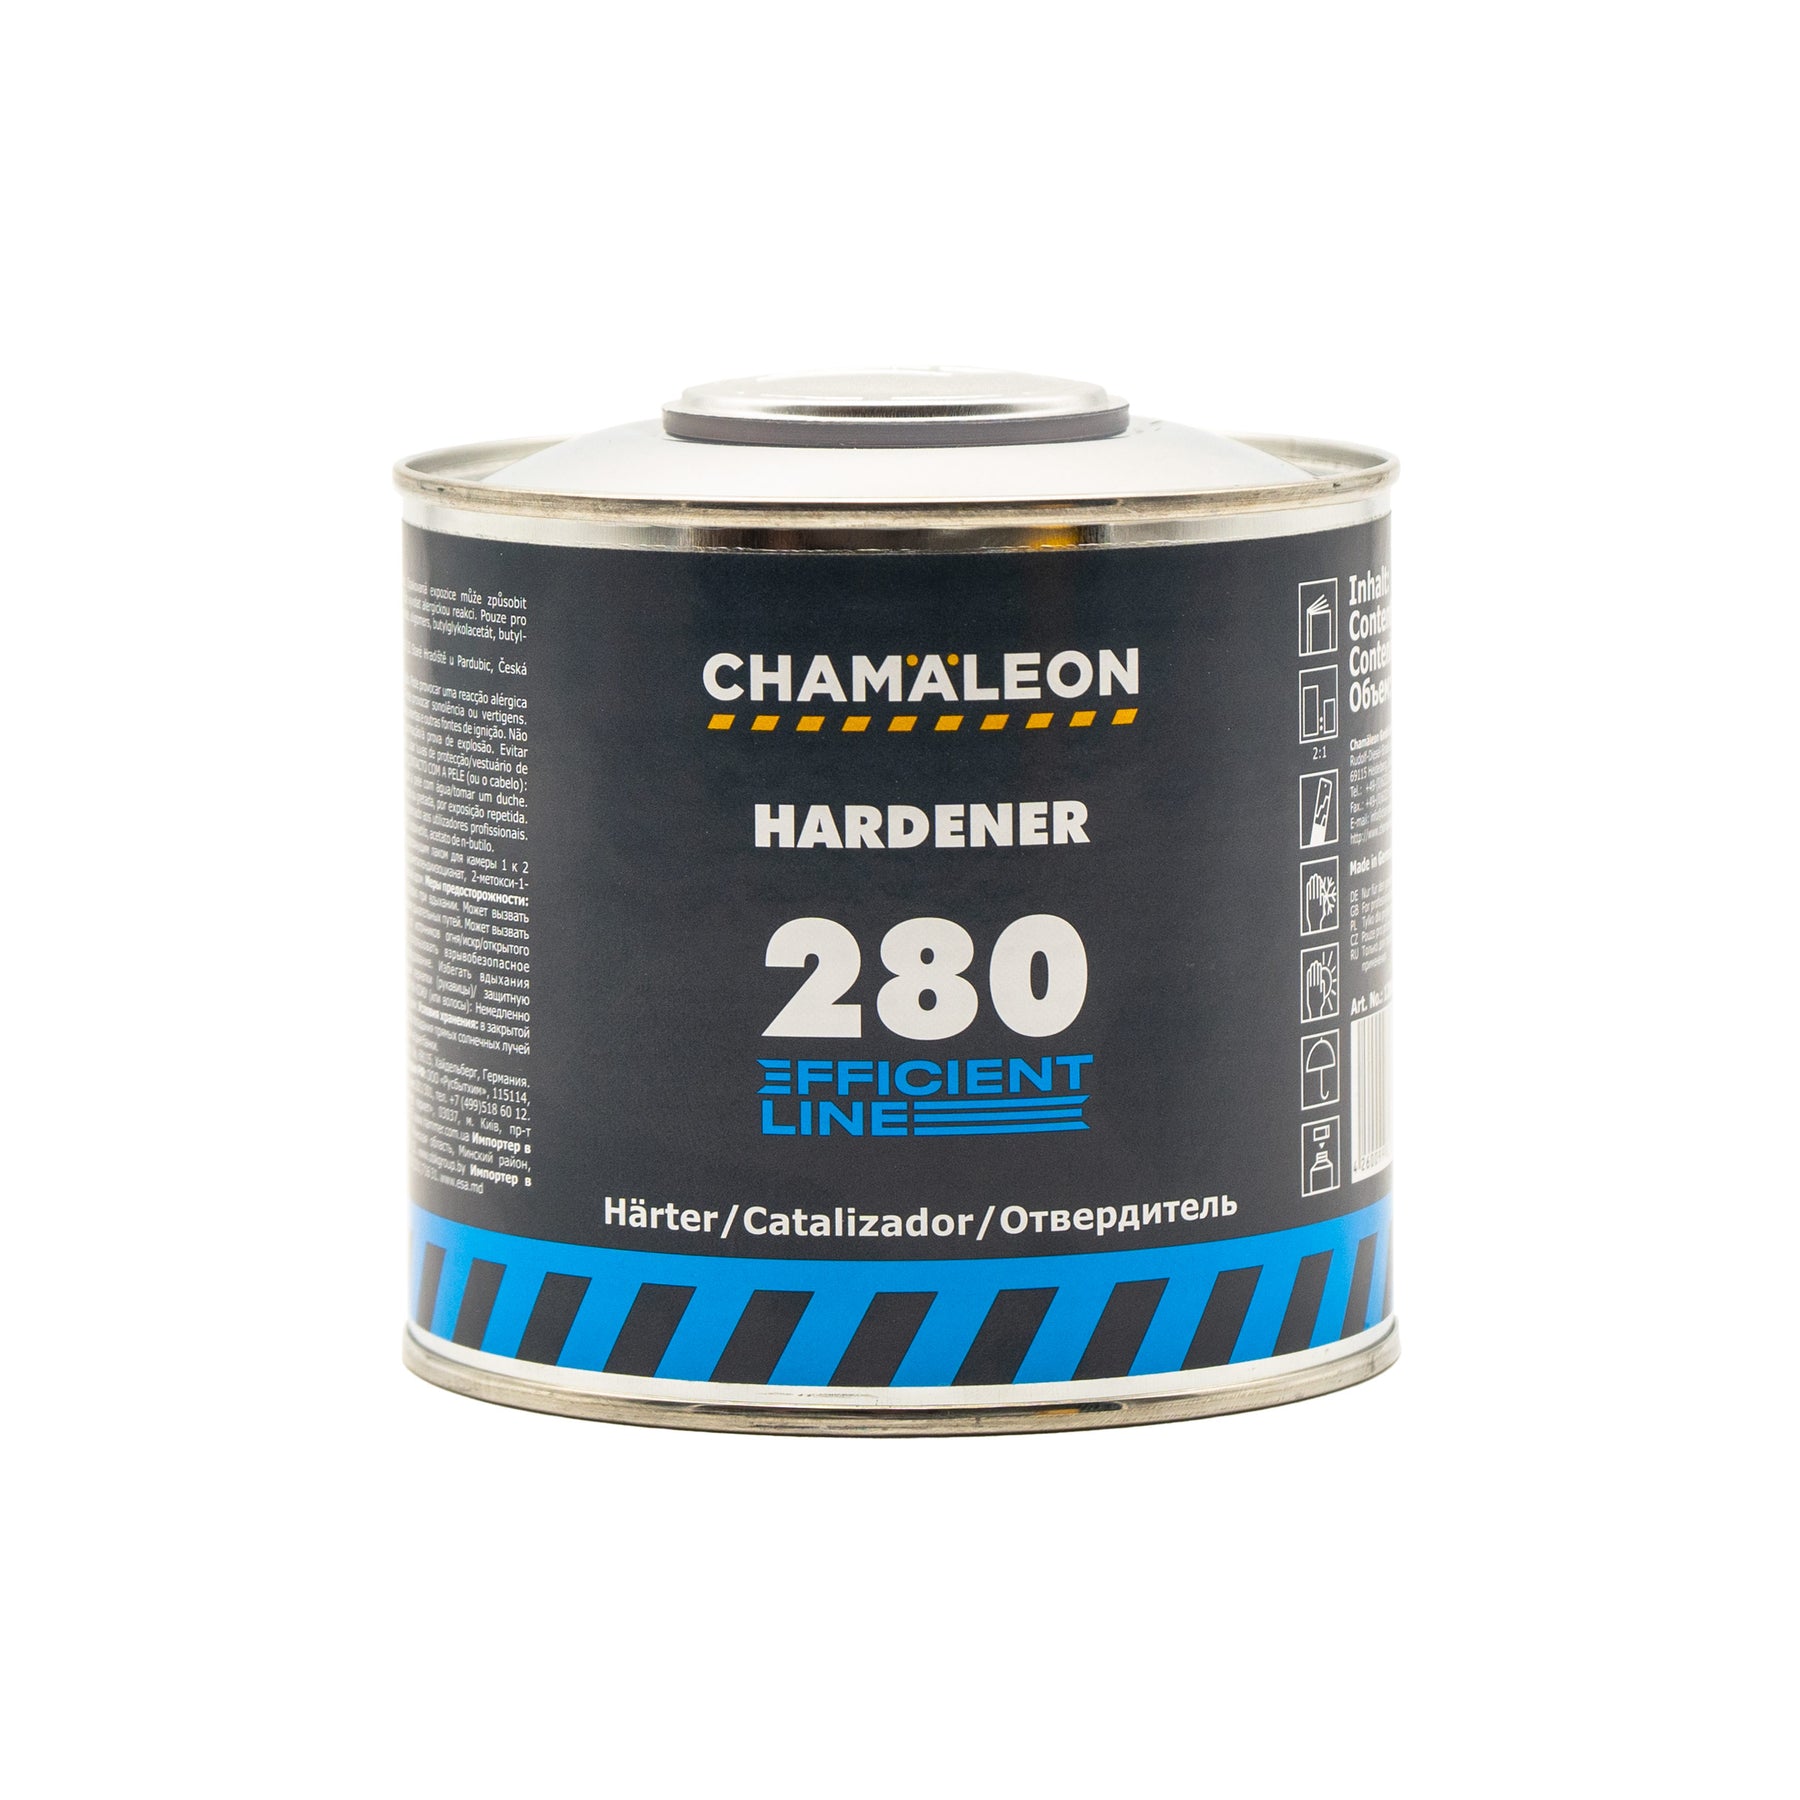 Chamaleon HS Hardener for 180 Clear Coat 280